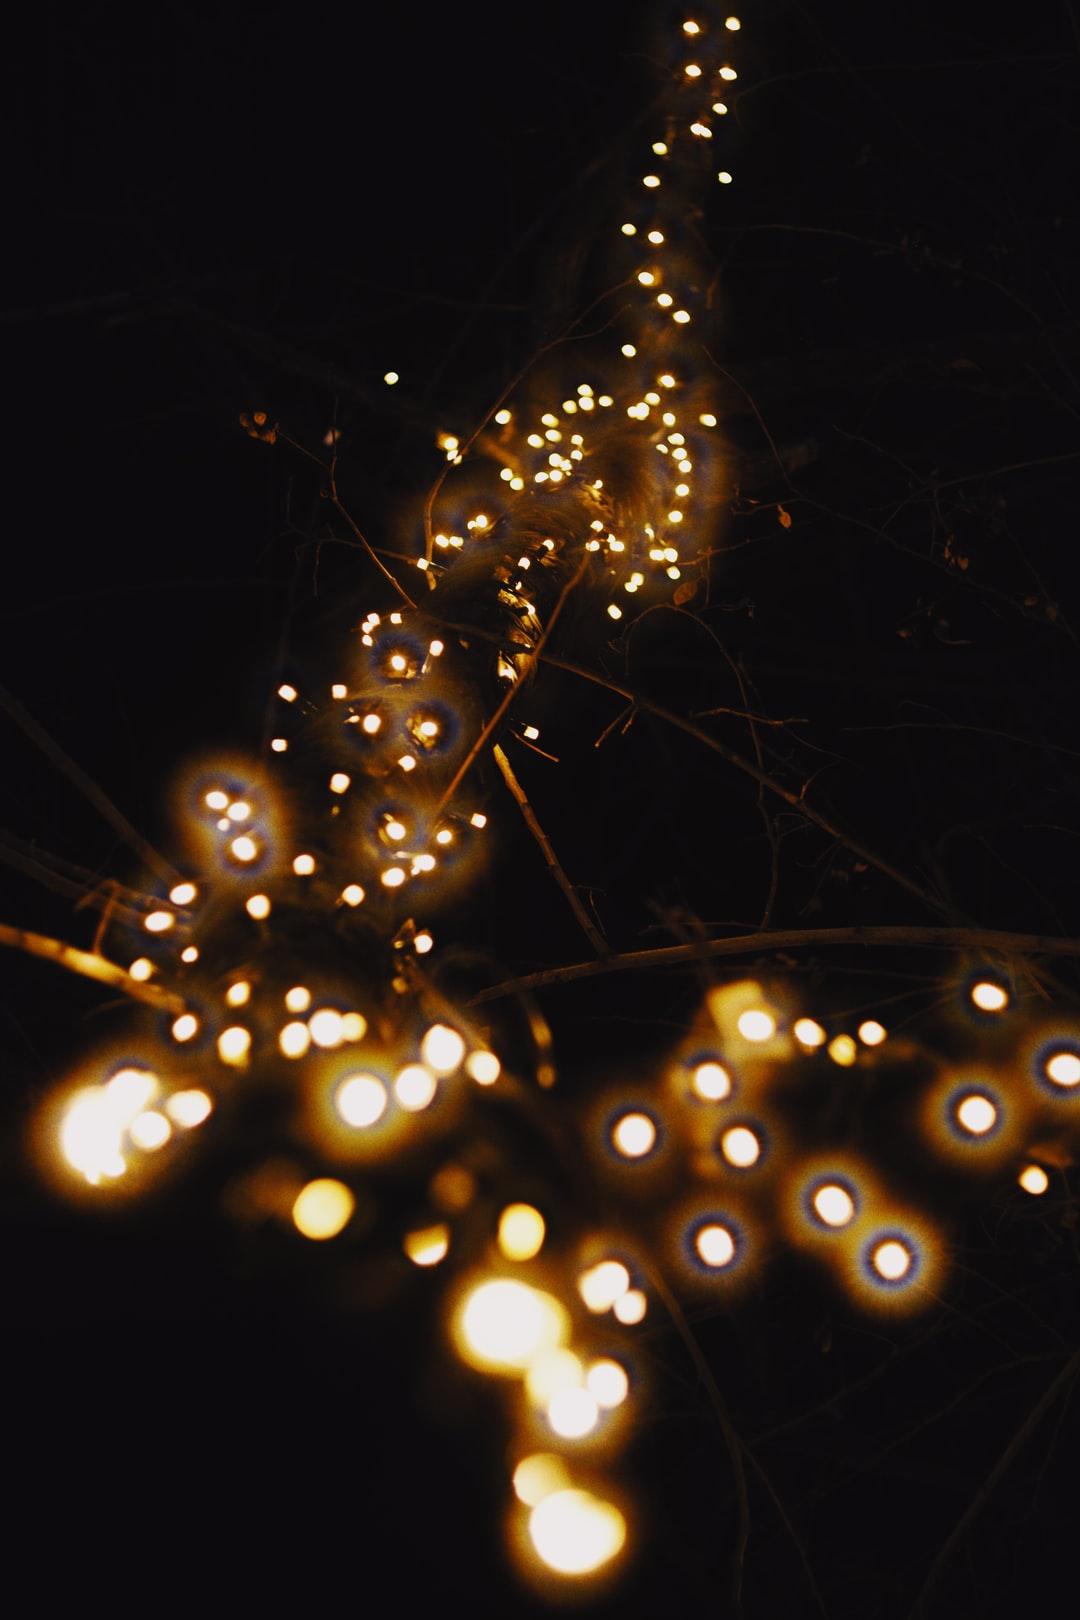 Glow, vsco, christmas and christmas tree